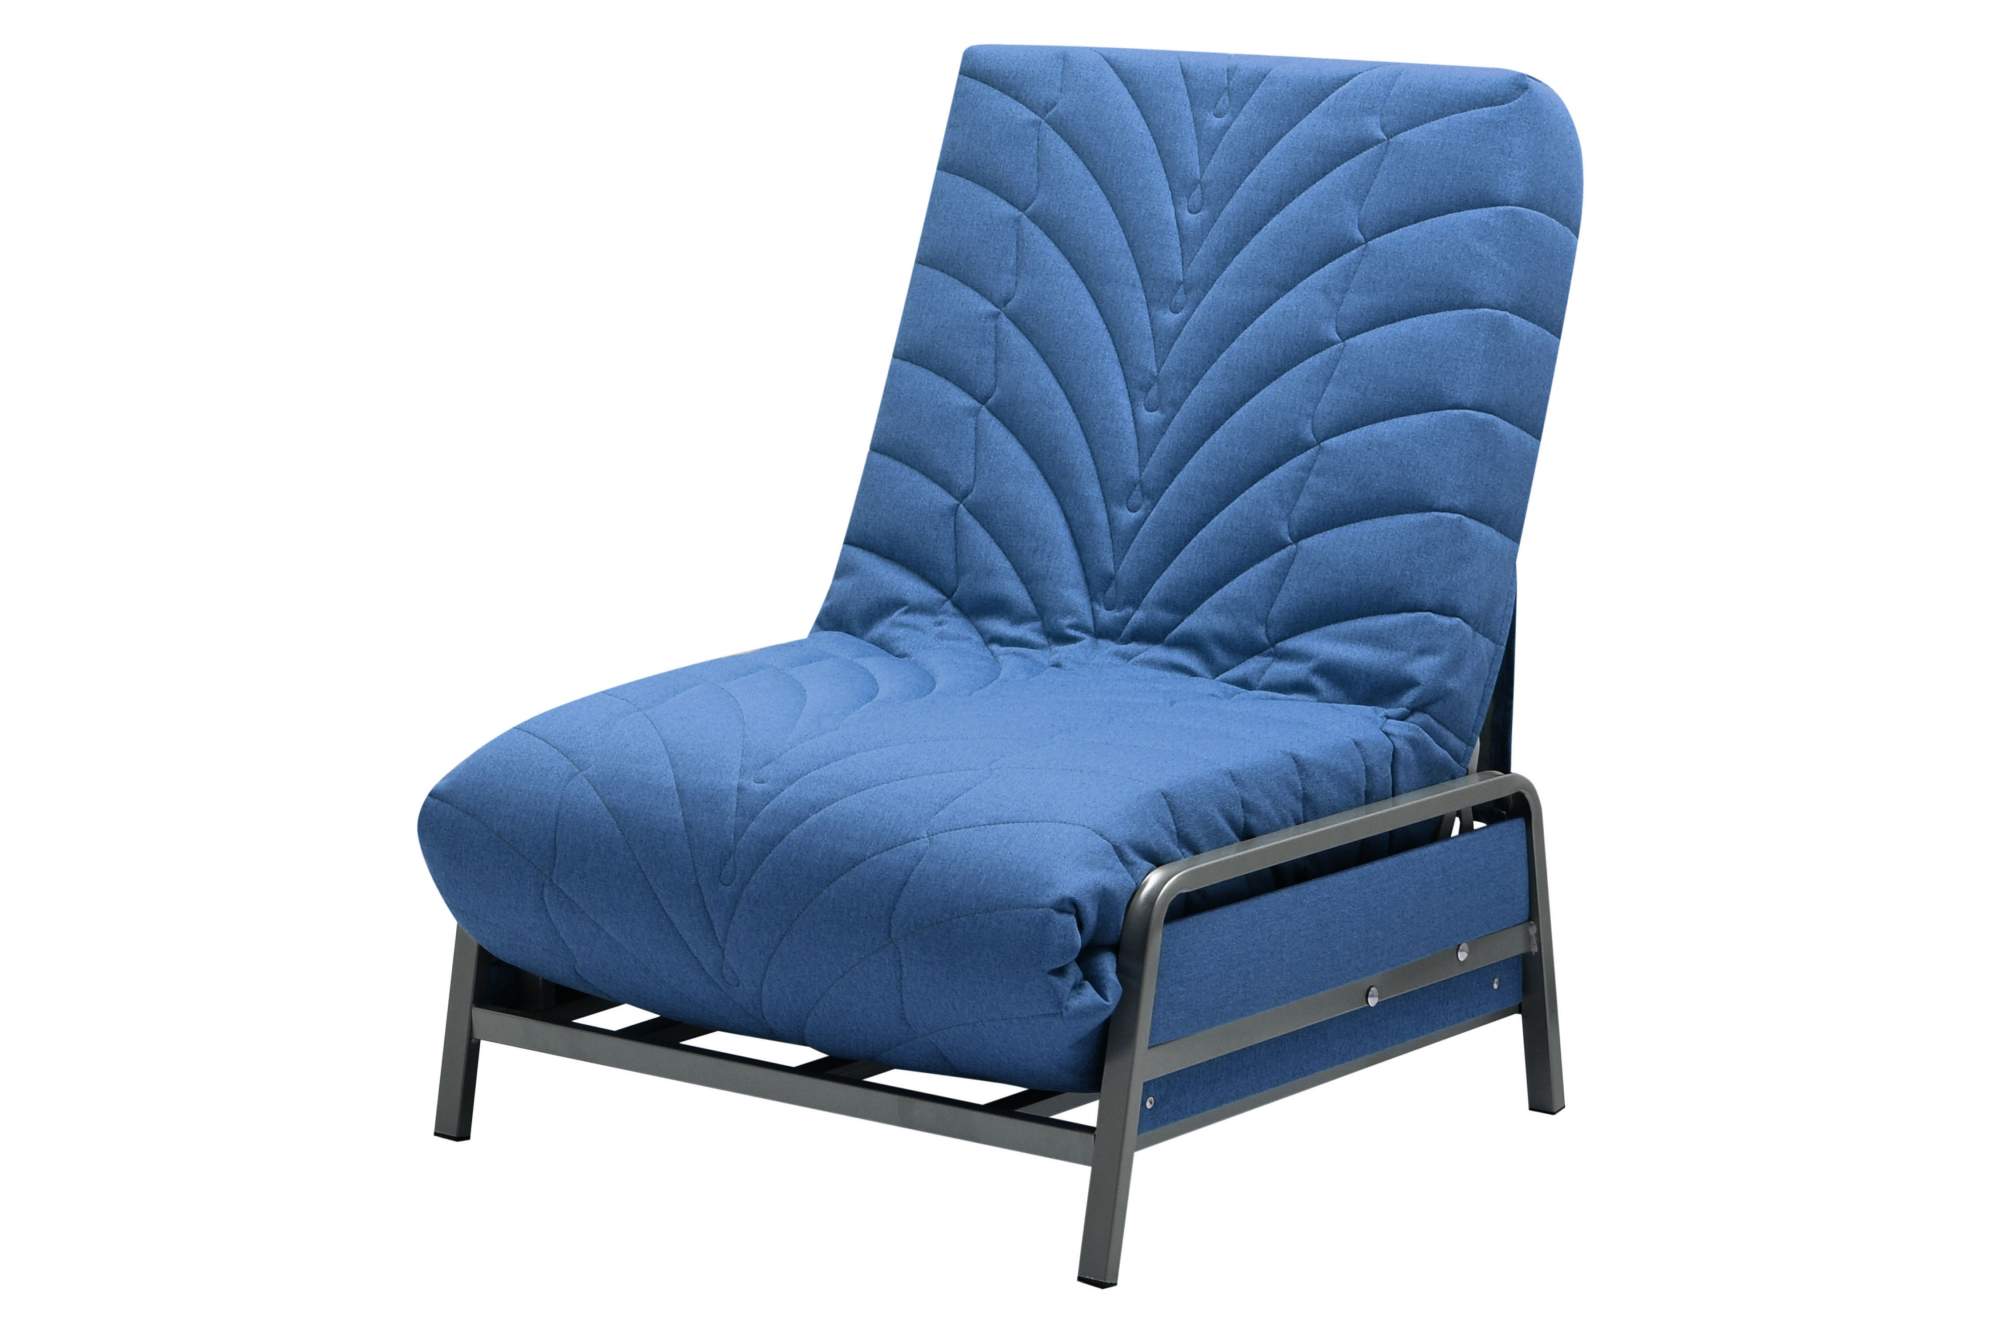 Кресло-кровать Акробат Шерлок 784 - купить в Москве, цены на Мегамаркет | 600013623108